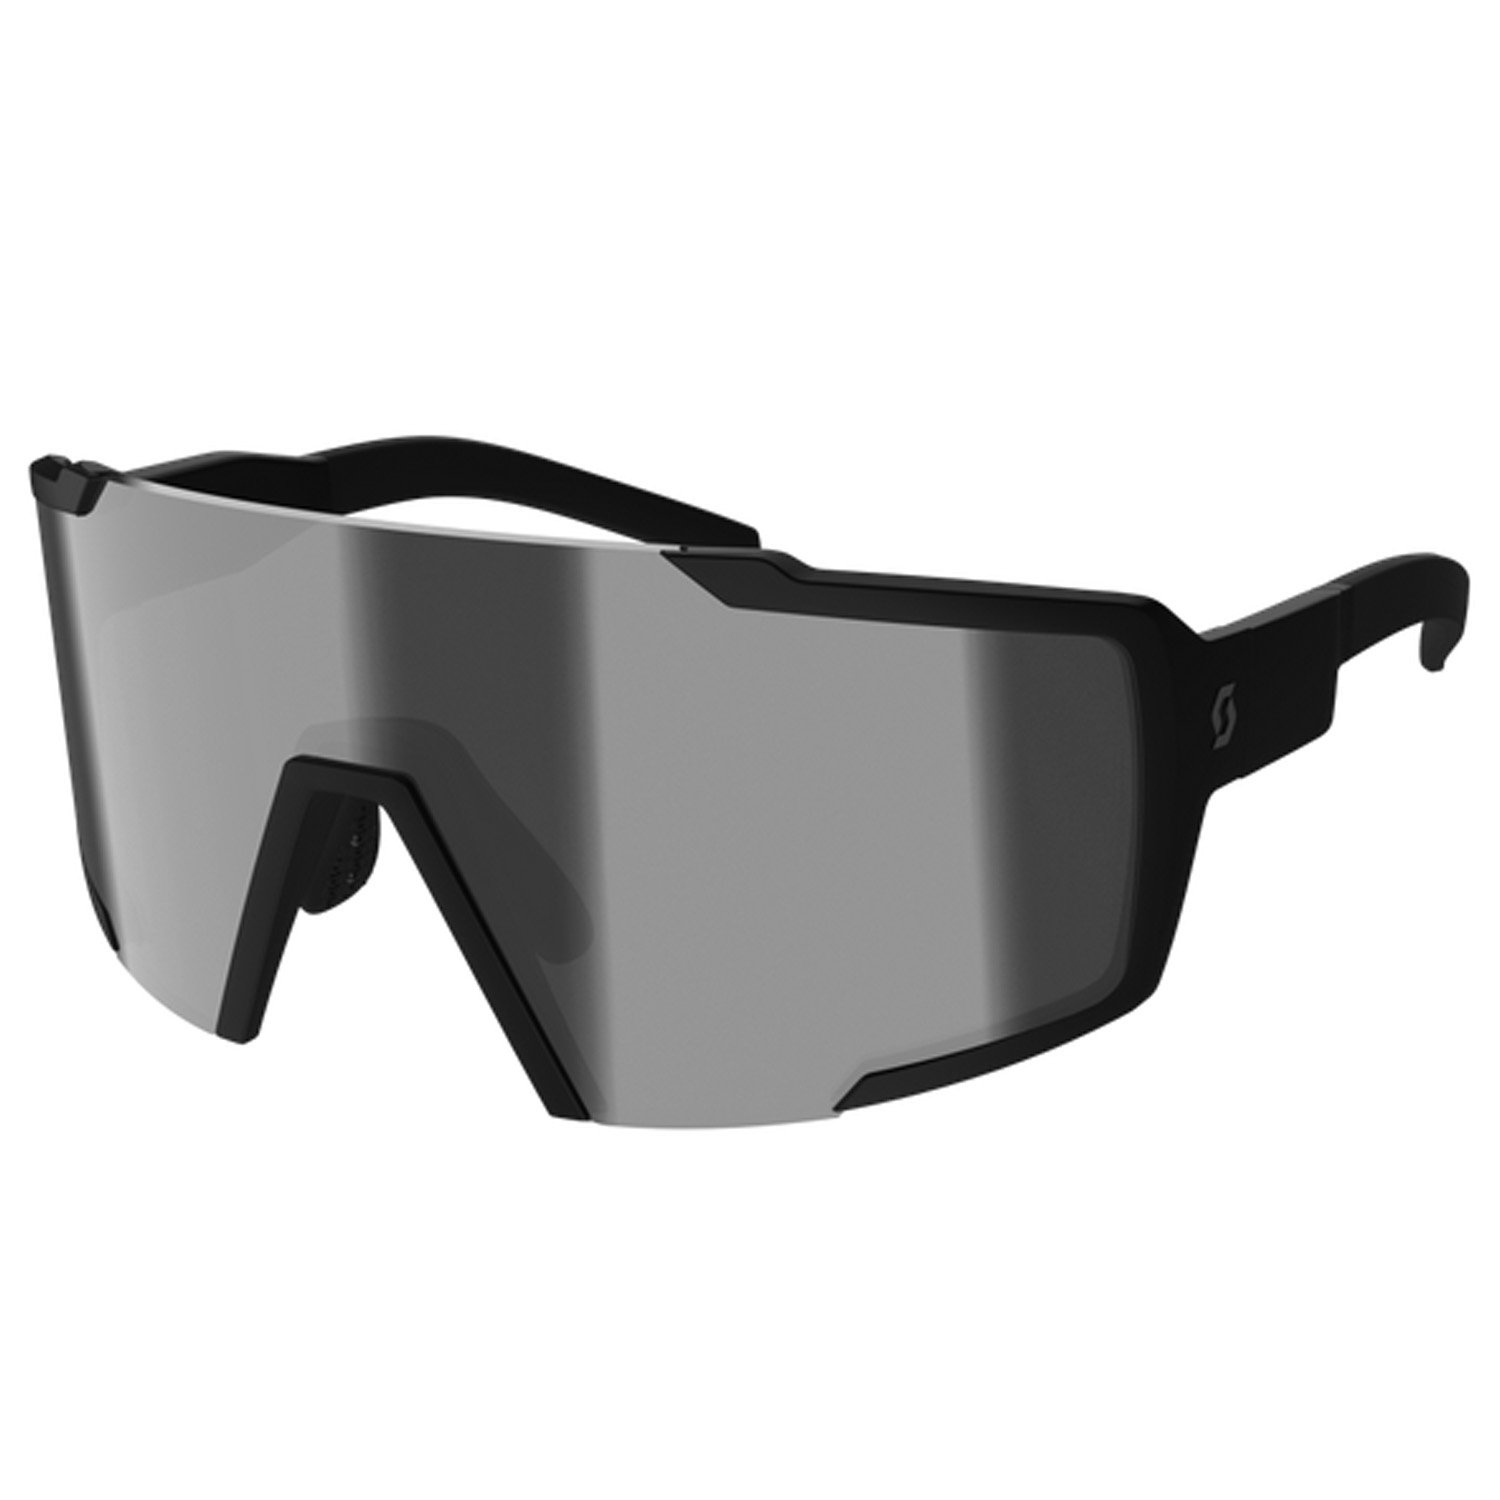 Очки велосипедные SCOTT Shield Compact black matt grey, ES289235-0135119 солнцезащитные очки мужские boss 1450 s mtbk grey hub 205494o6w57ir